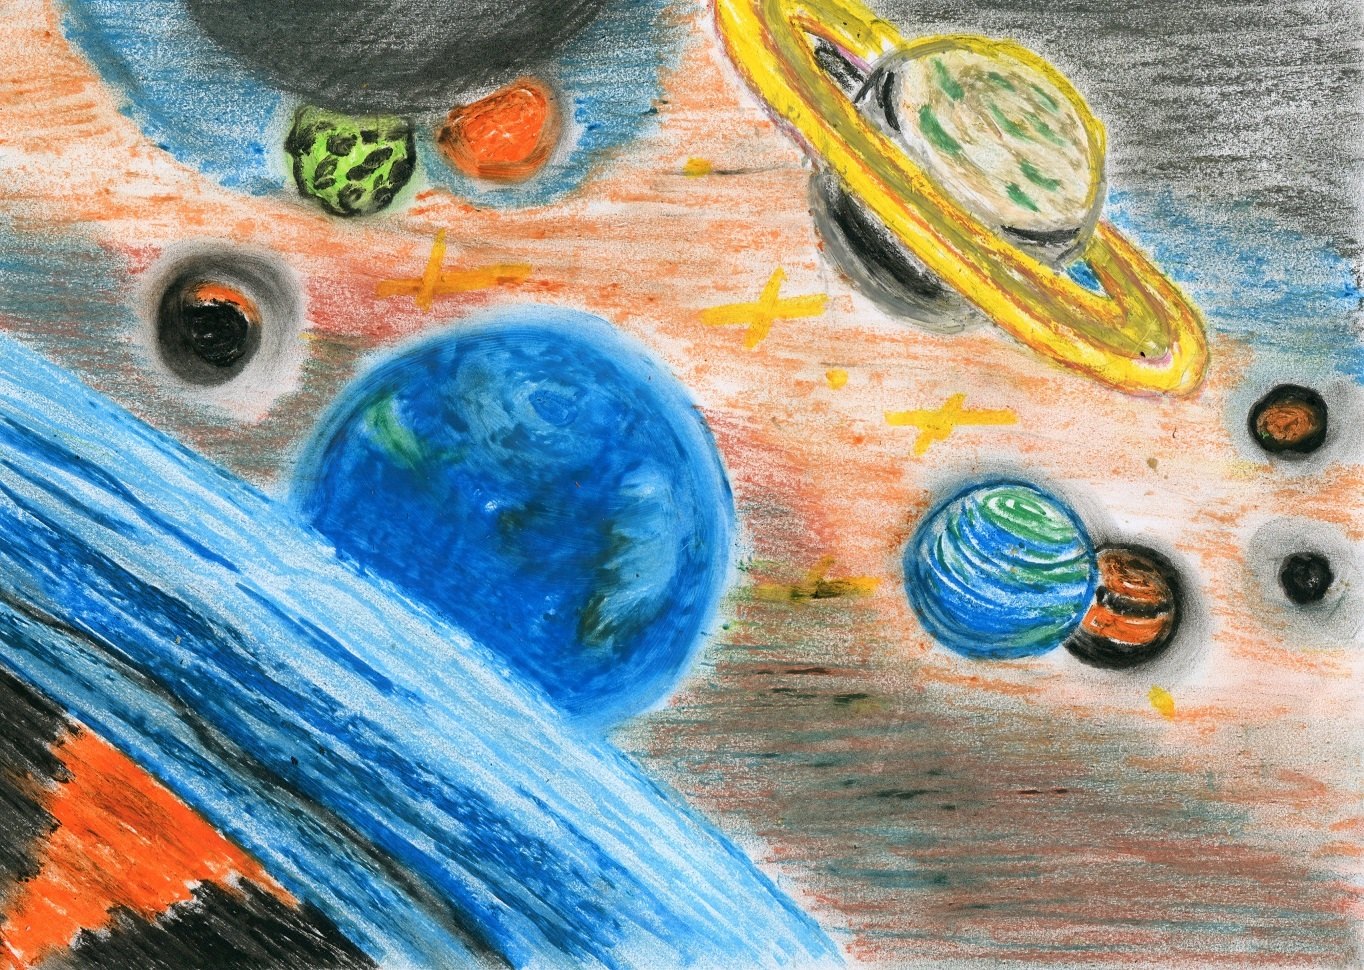 Просторы космоса рисунки для детей